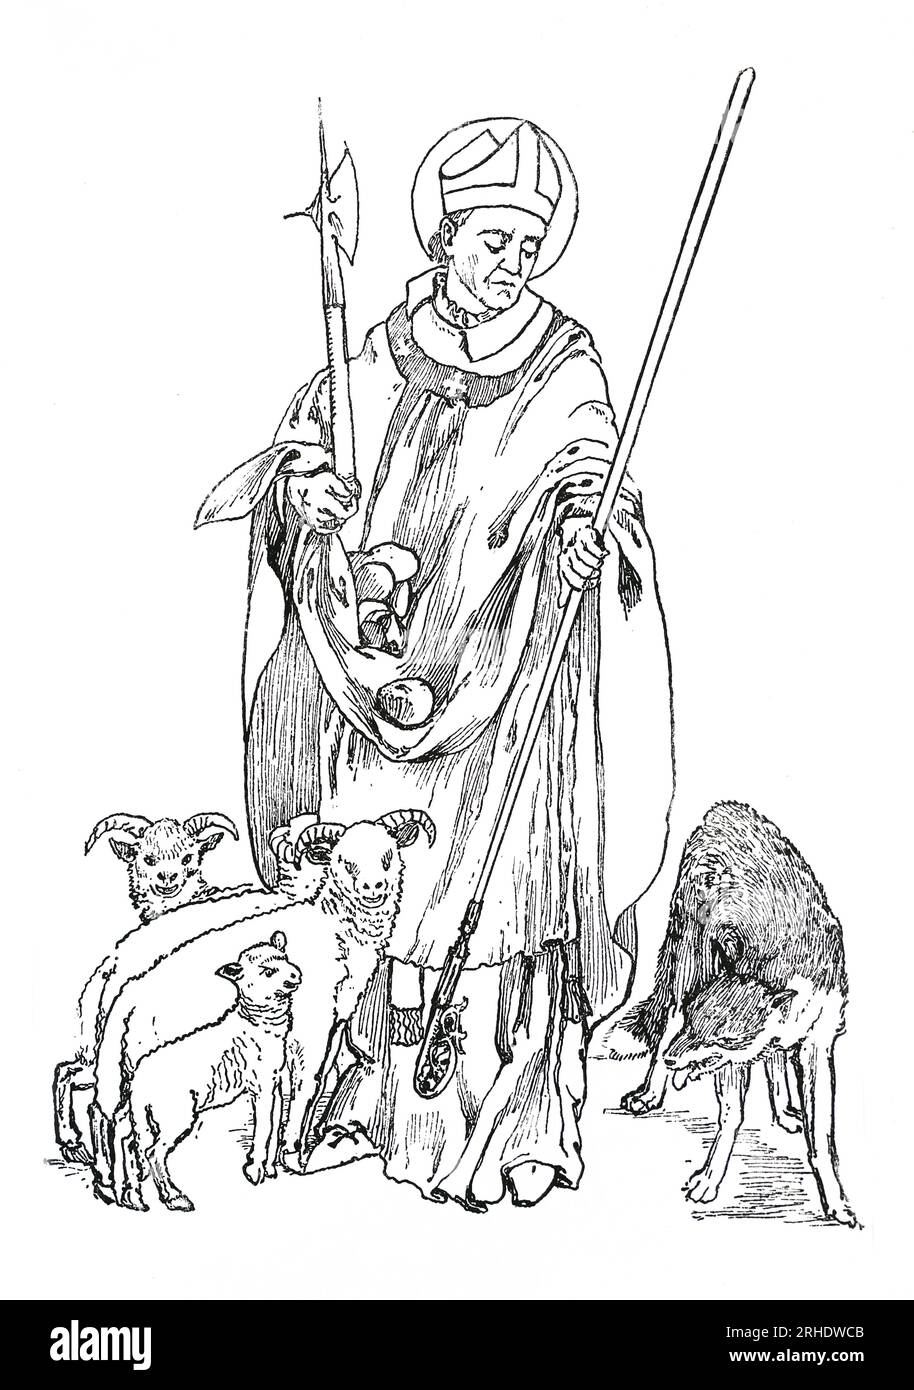 St. Alphege (alias Ælfheah) war ein angelsächsischer Bischof von Winchester, später Erzbischof von Canterbury. Ælfheah wurde 1011AD von den Dänen während der Belagerung von Canterbury gefangen genommen und sieben Monate lang gefangen gehalten. Er weigerte sich jedoch, ein Lösegeld zu zahlen, um seine Freiheit zu sichern, und wurde zu Tode gesteinigt. In dieser Gravur aus dem Leben der Heiligen von Sabin Baring-Gould wird er mit den Steinen seines Märtyrertums dargestellt. Stockfoto